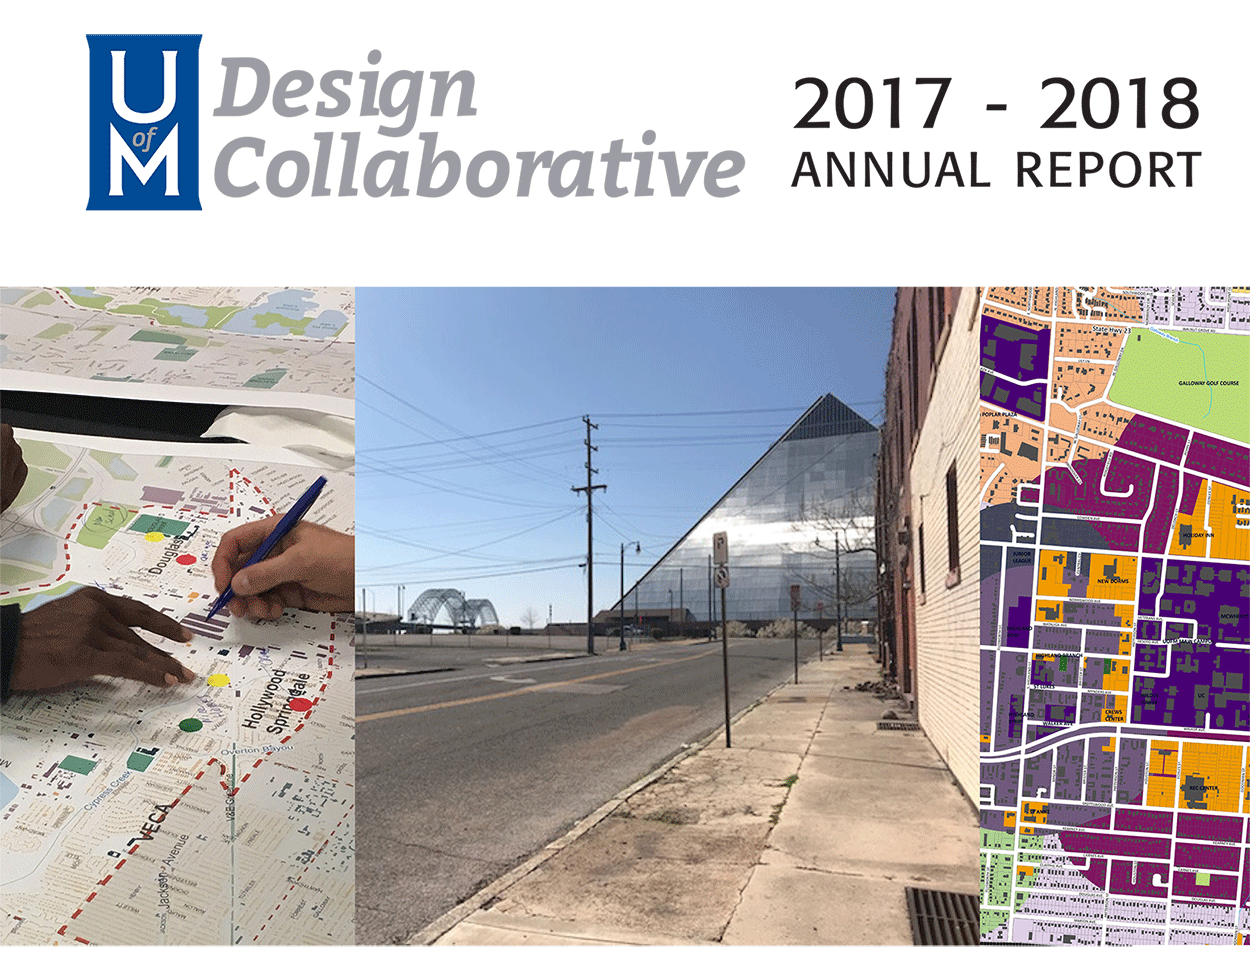 UofM Design Collaborative | 2017 - 2018 Annual Report